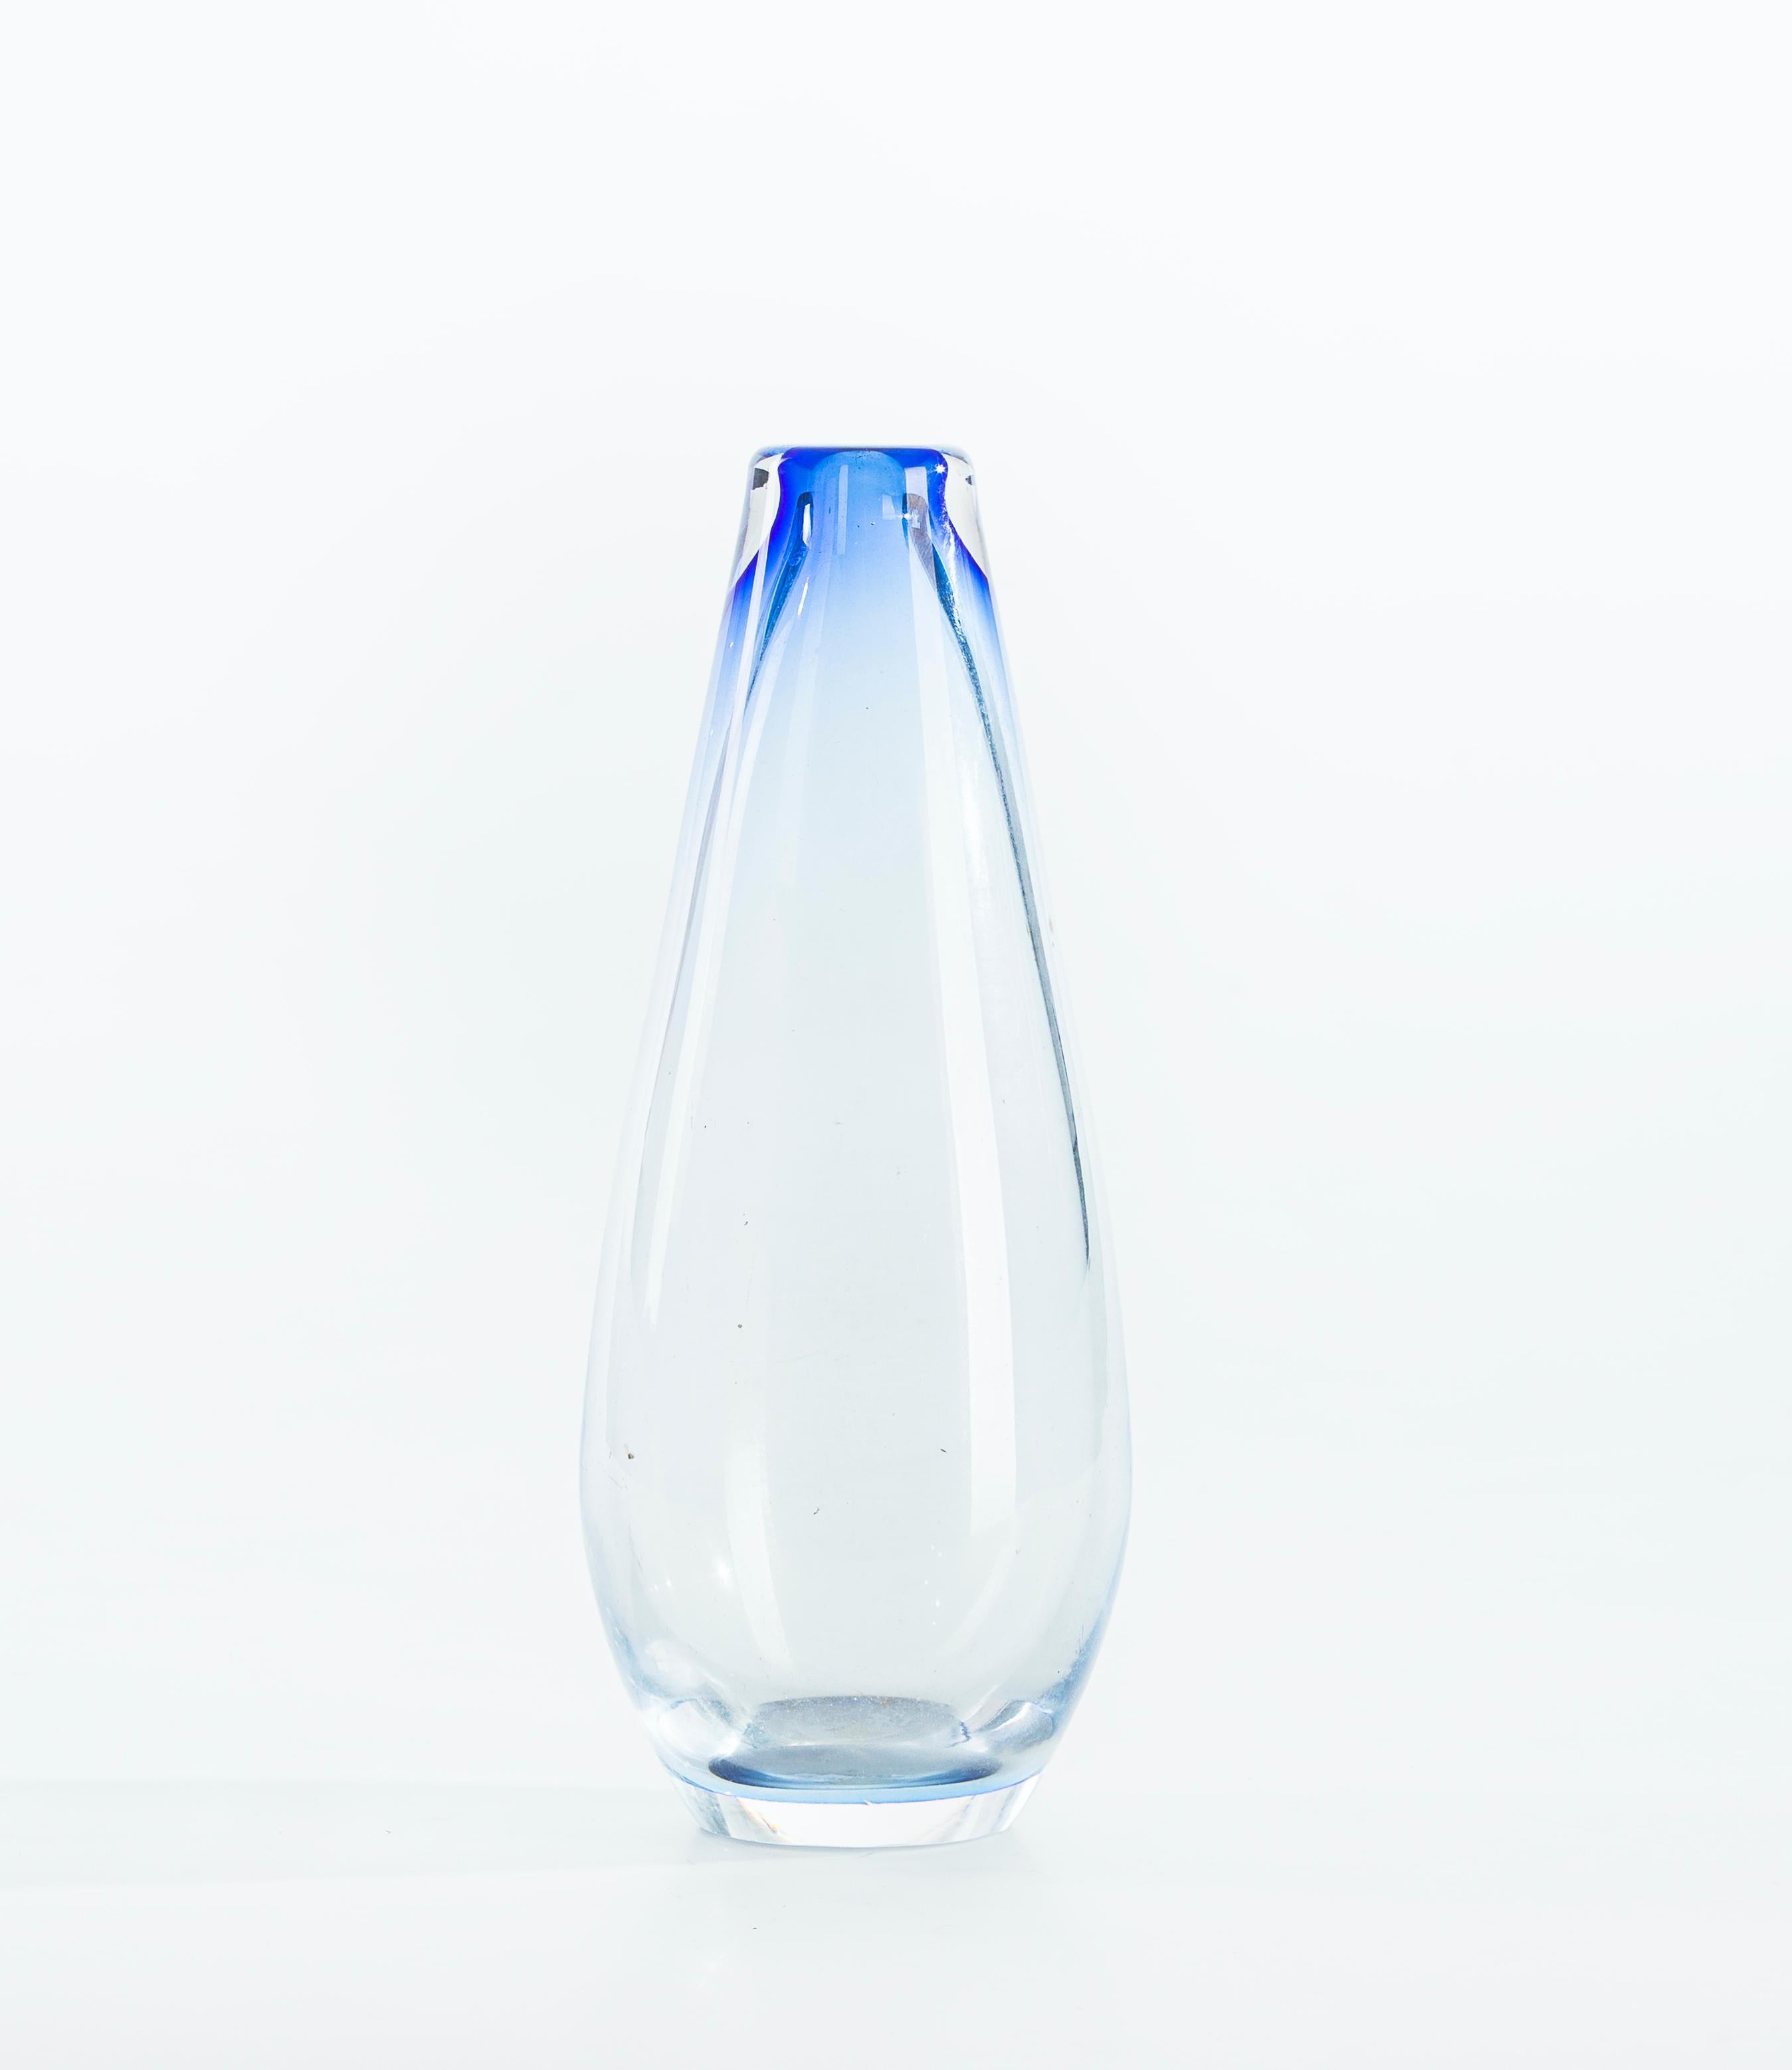 Diese Vase aus blauem Mischglas ist eine kleine, unifleurige Vase aus transparentem, beschichtetem Glas mit kobaltblauen Schattierungen.

Hergestellt in Italien in den 1960er Jahren. In ausgezeichnetem Zustand ist dies ein köstliches Stück für ein